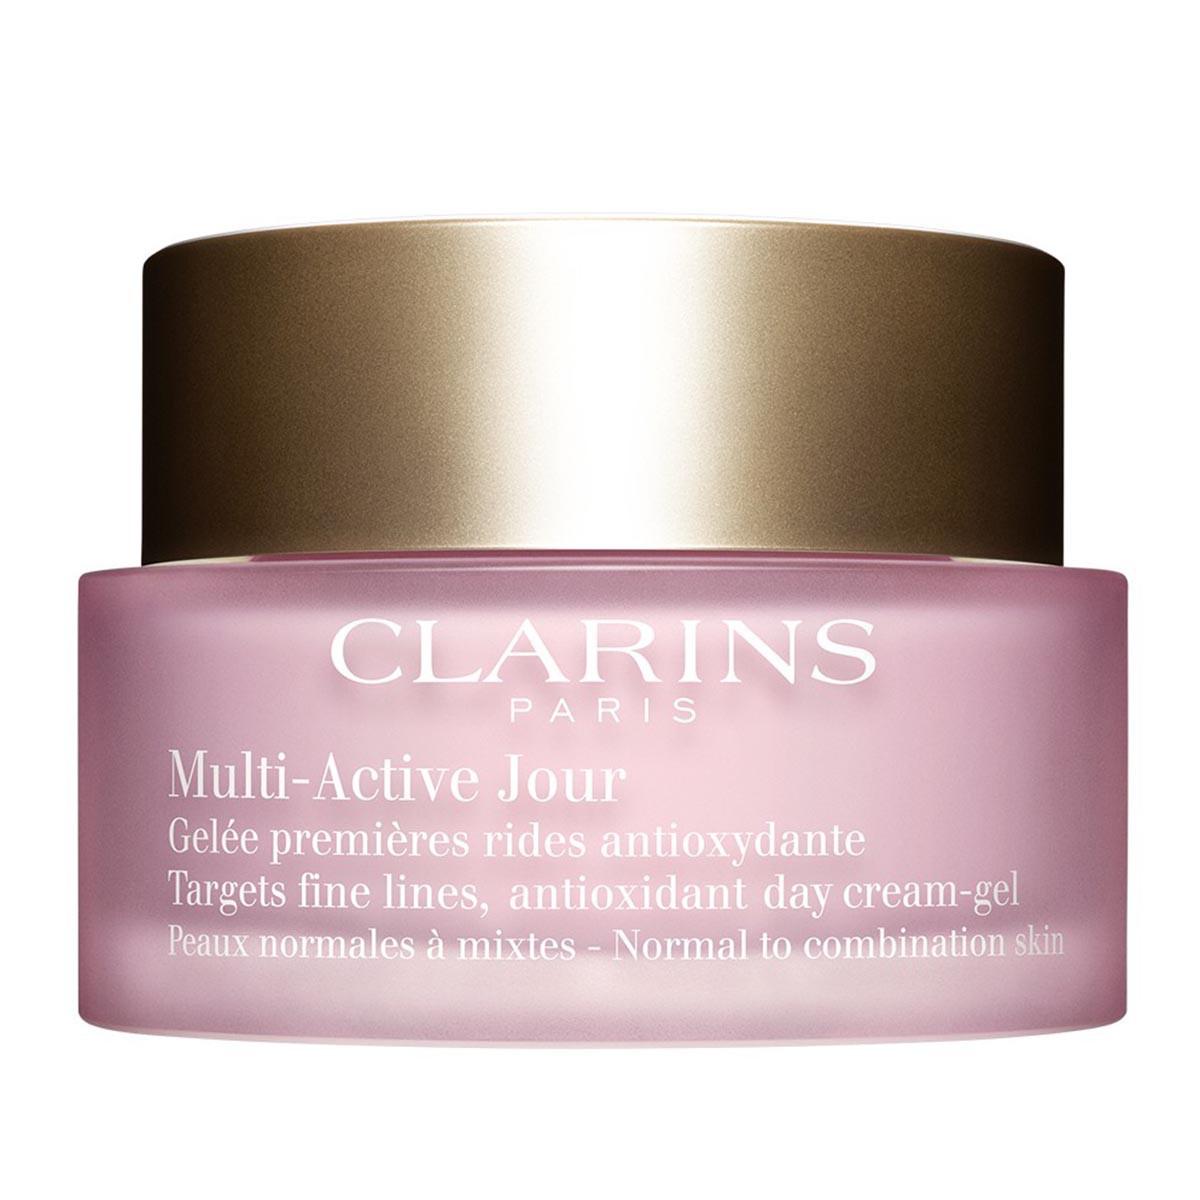 clarins-multi-active-jour-peaux-normales-mixtes-50ml